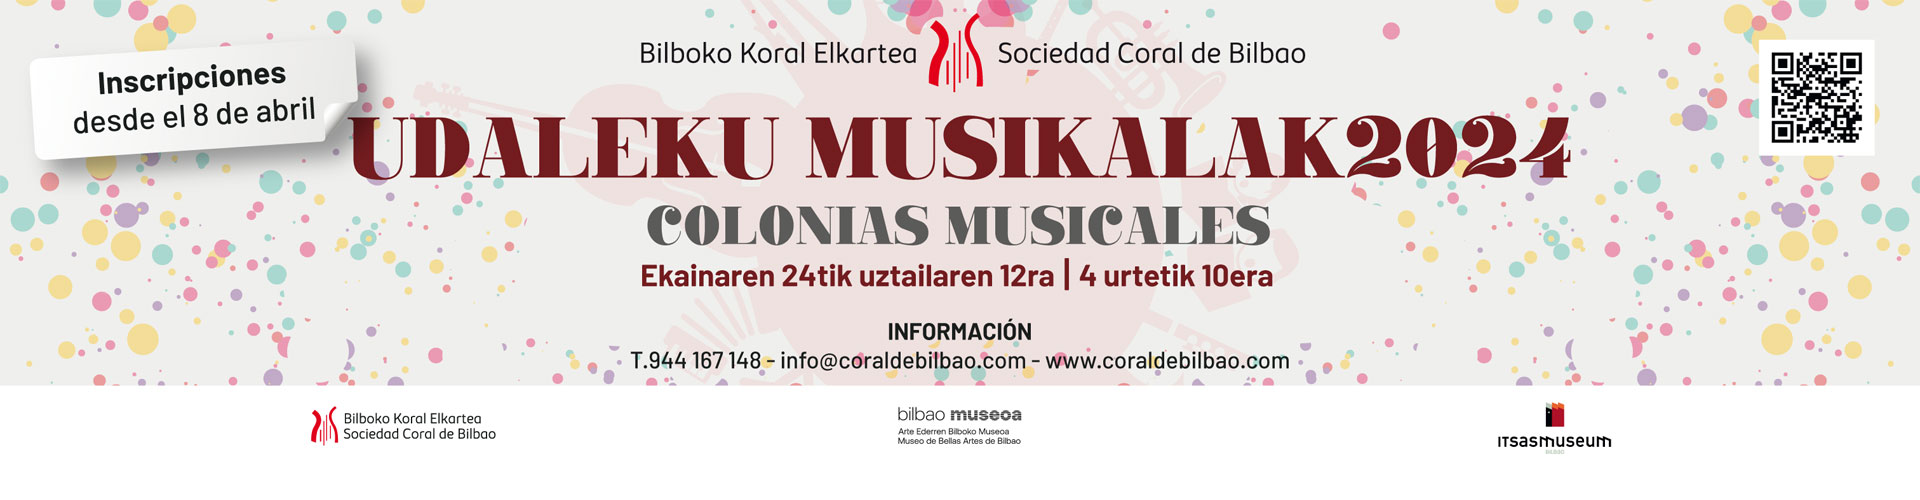 Colonias musicales 2024 Udaleku musikalak